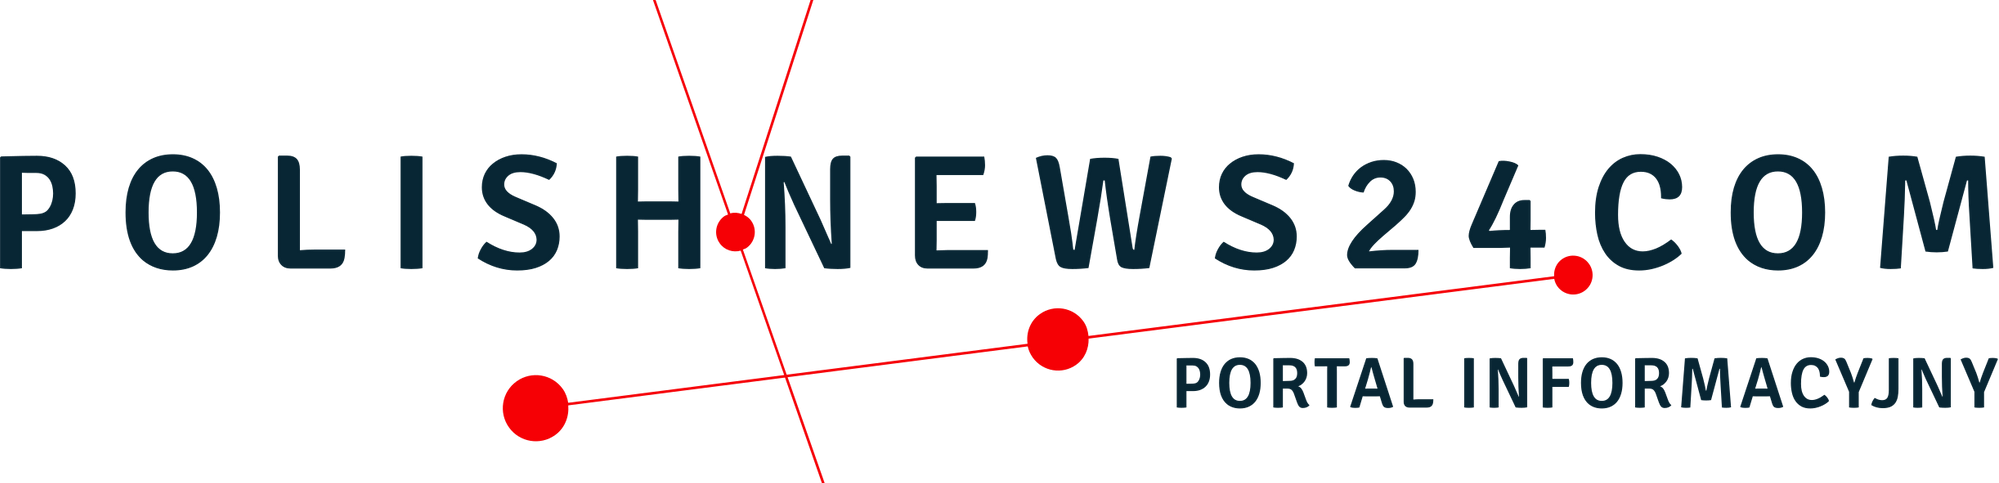 Informacyjny portal polonijny Polish News 24 .com